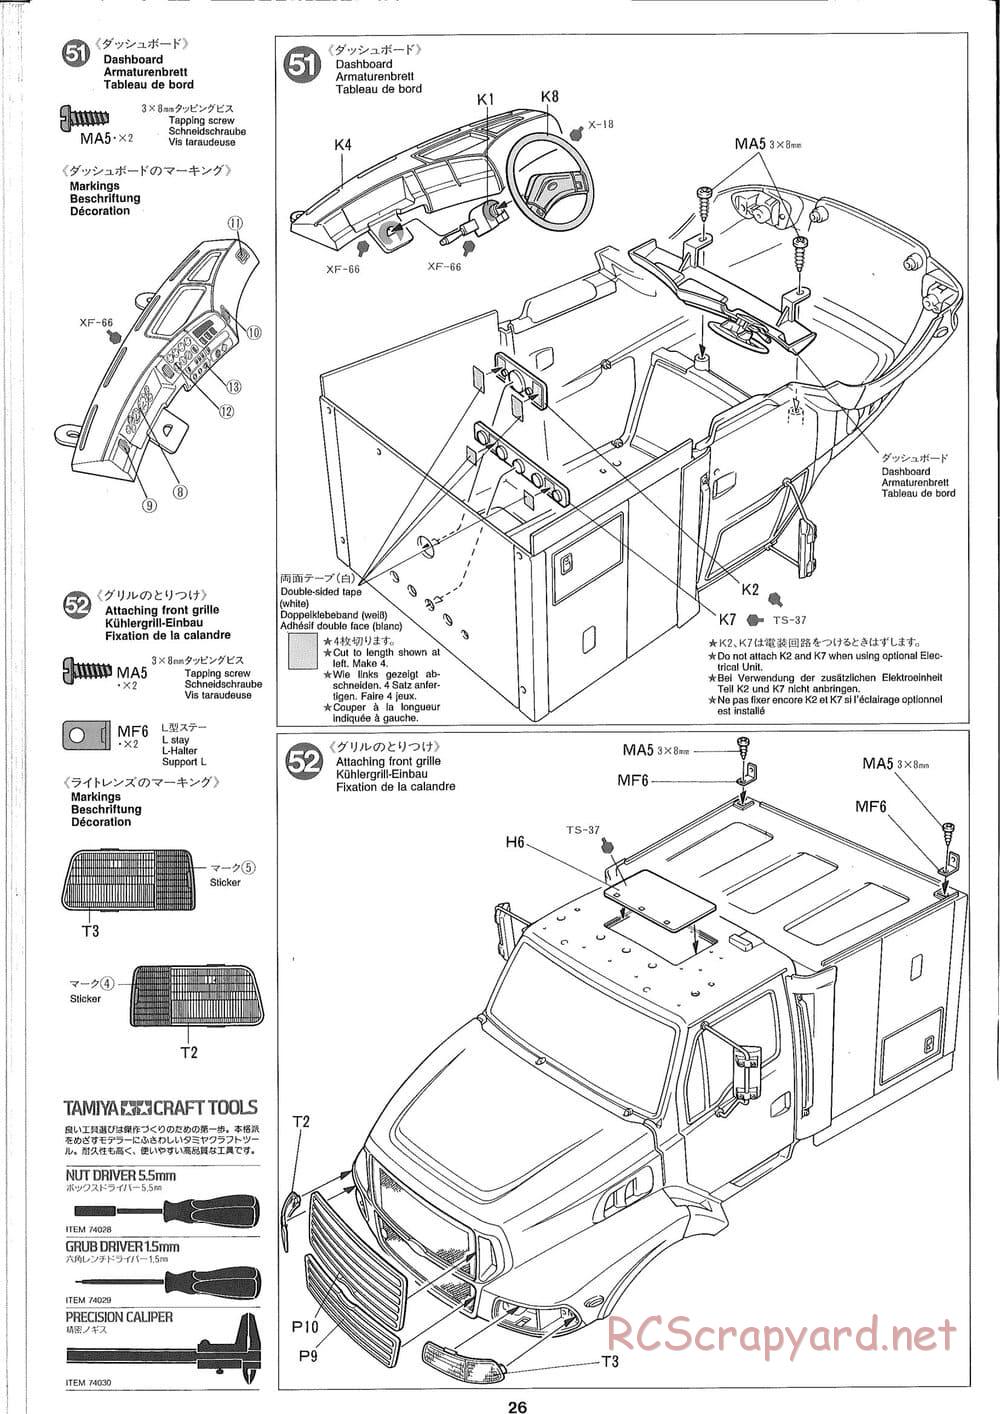 Tamiya - Ford Aeromax - Manual - Page 26